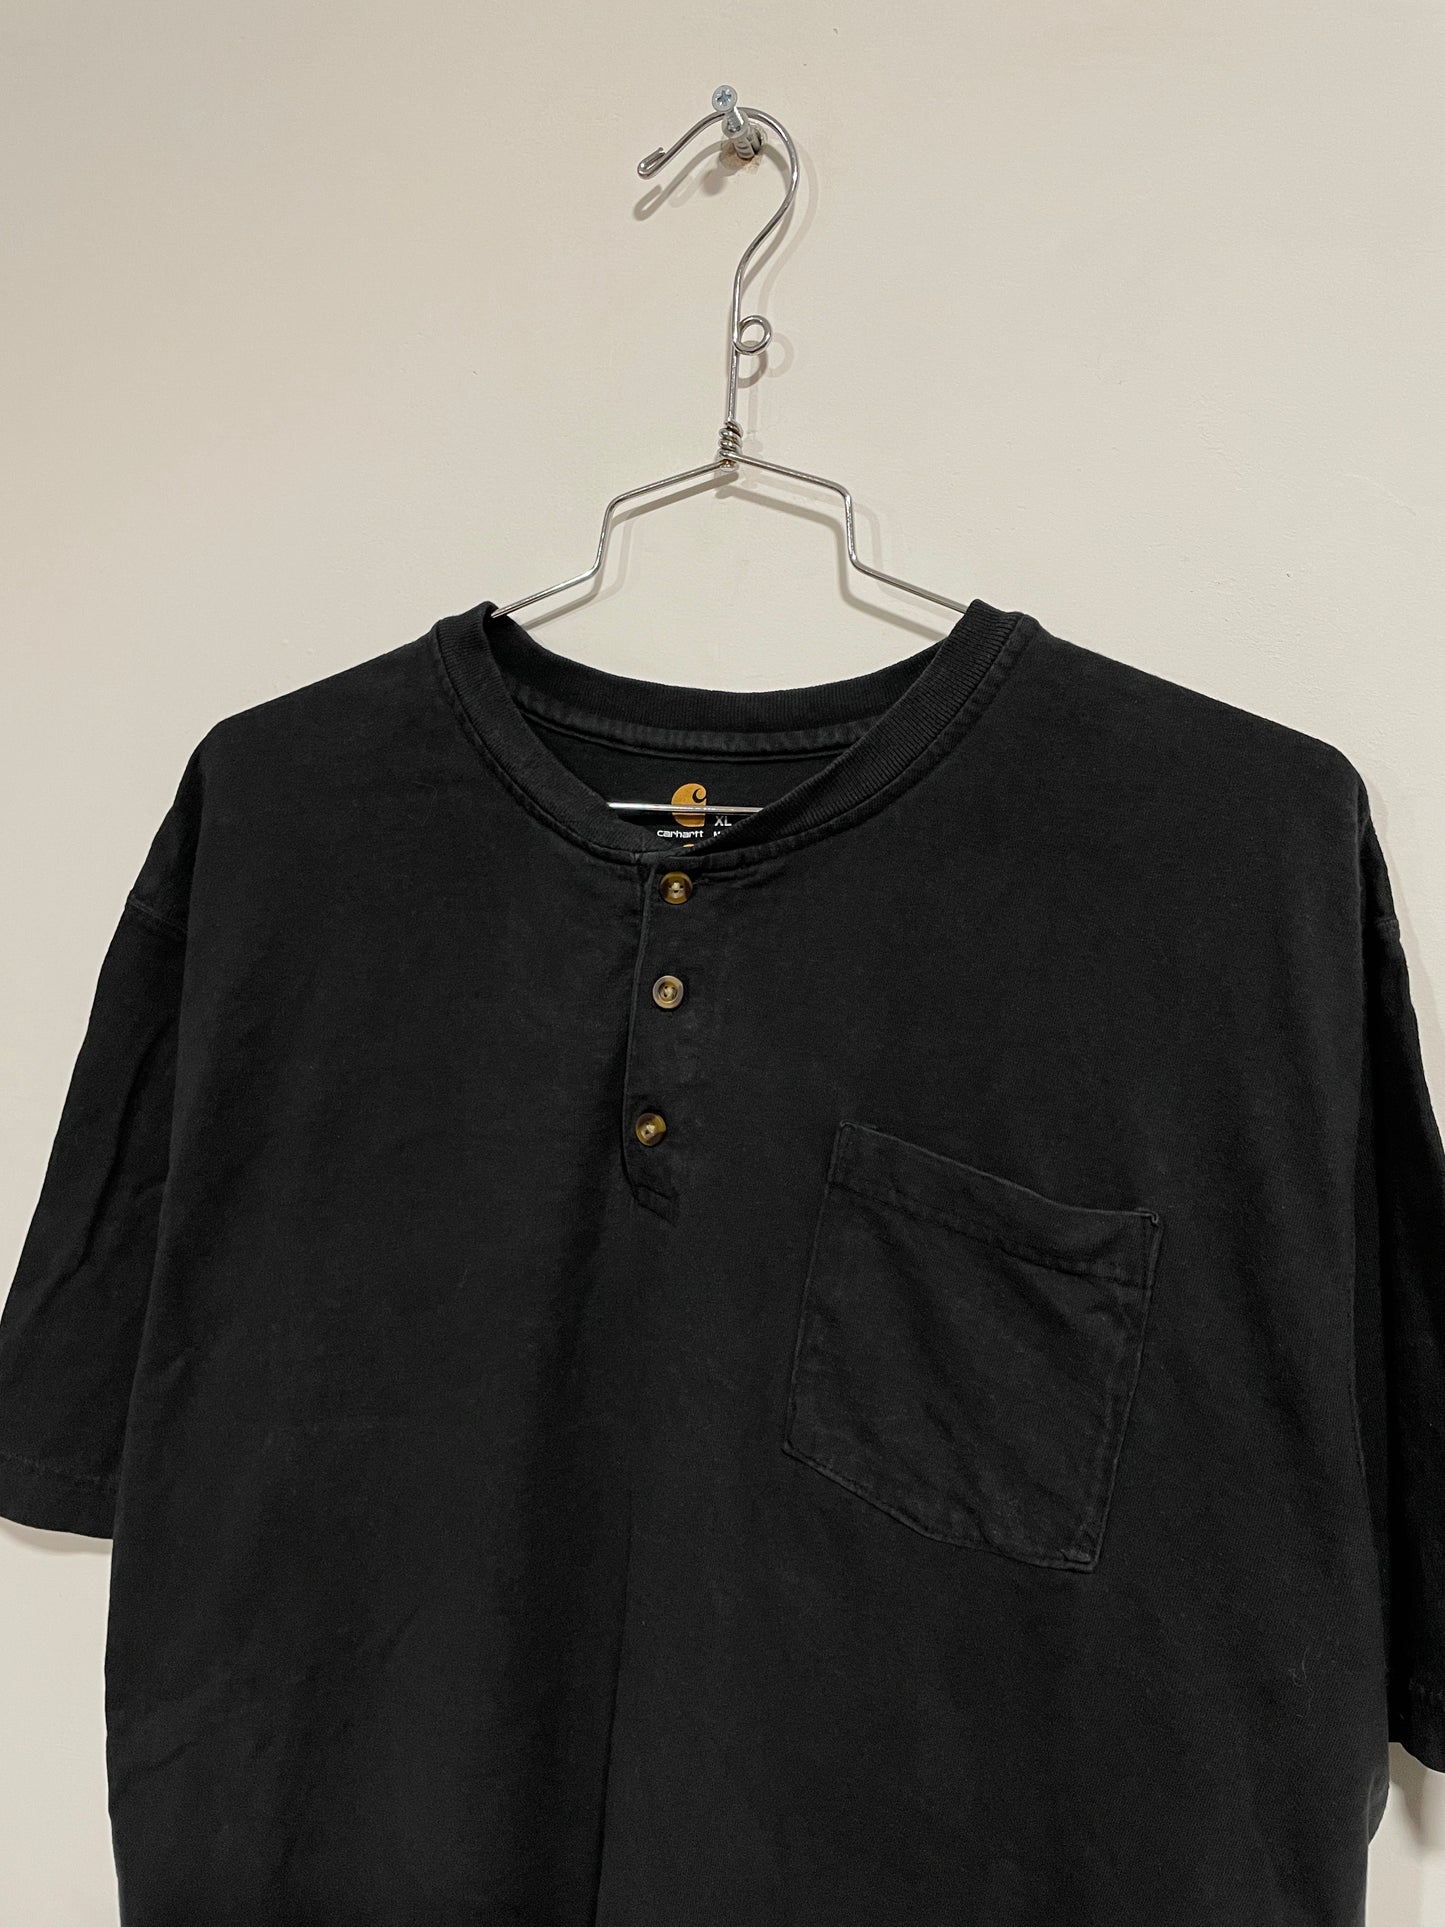 T shirt Carhartt USA (MR028)